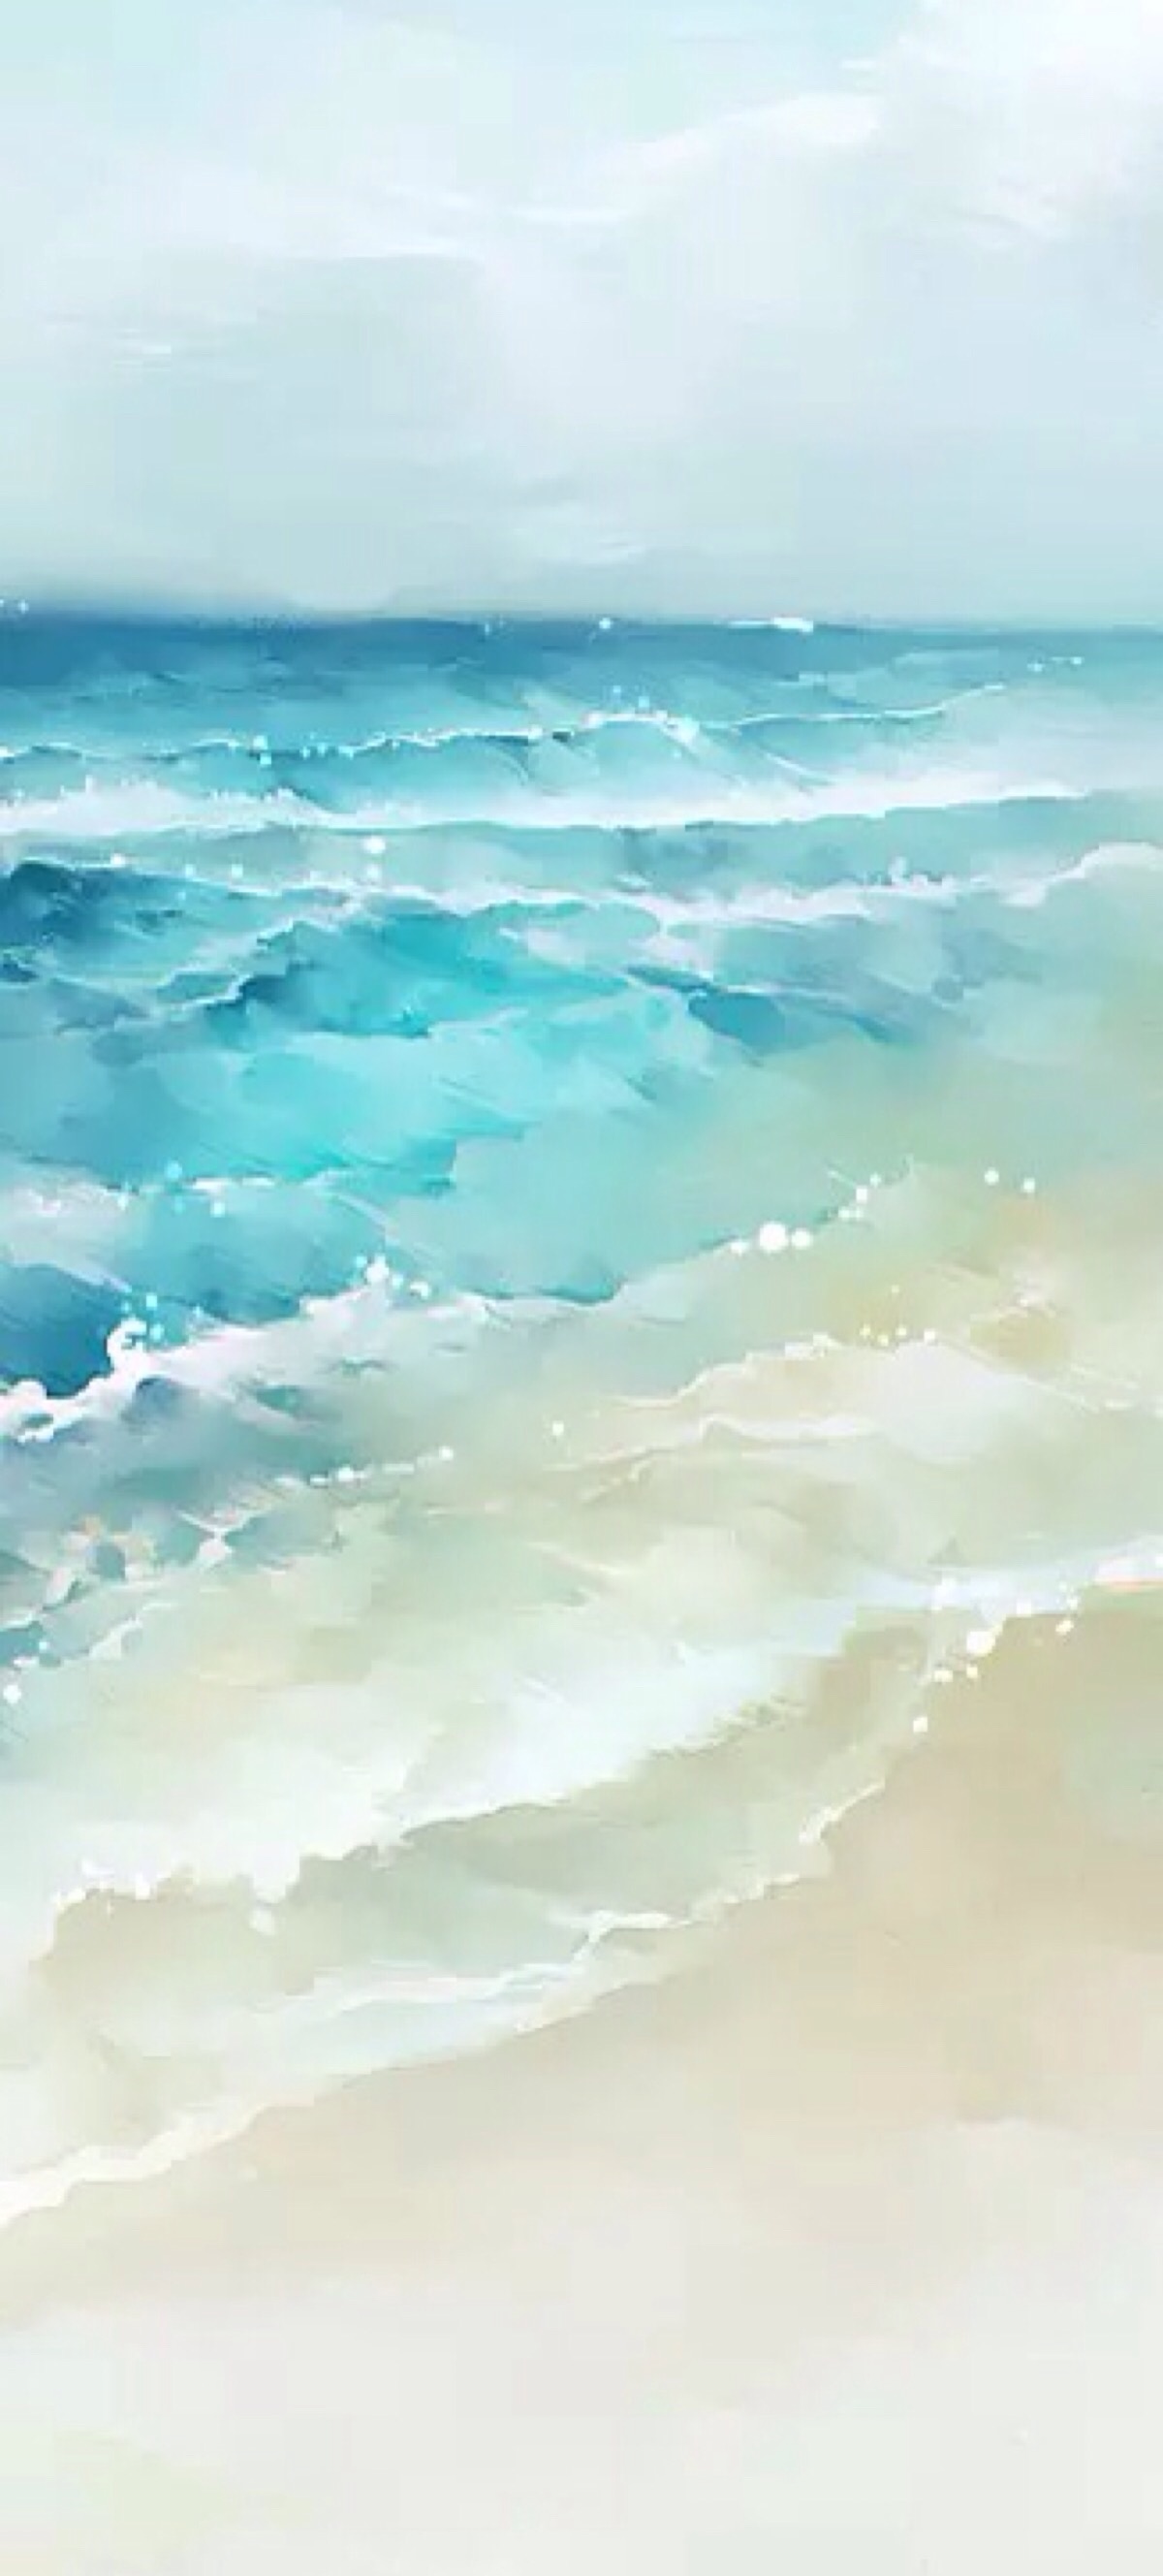 水彩 手绘 沙滩 清新自然风景画 自然 山水 唯美壁纸